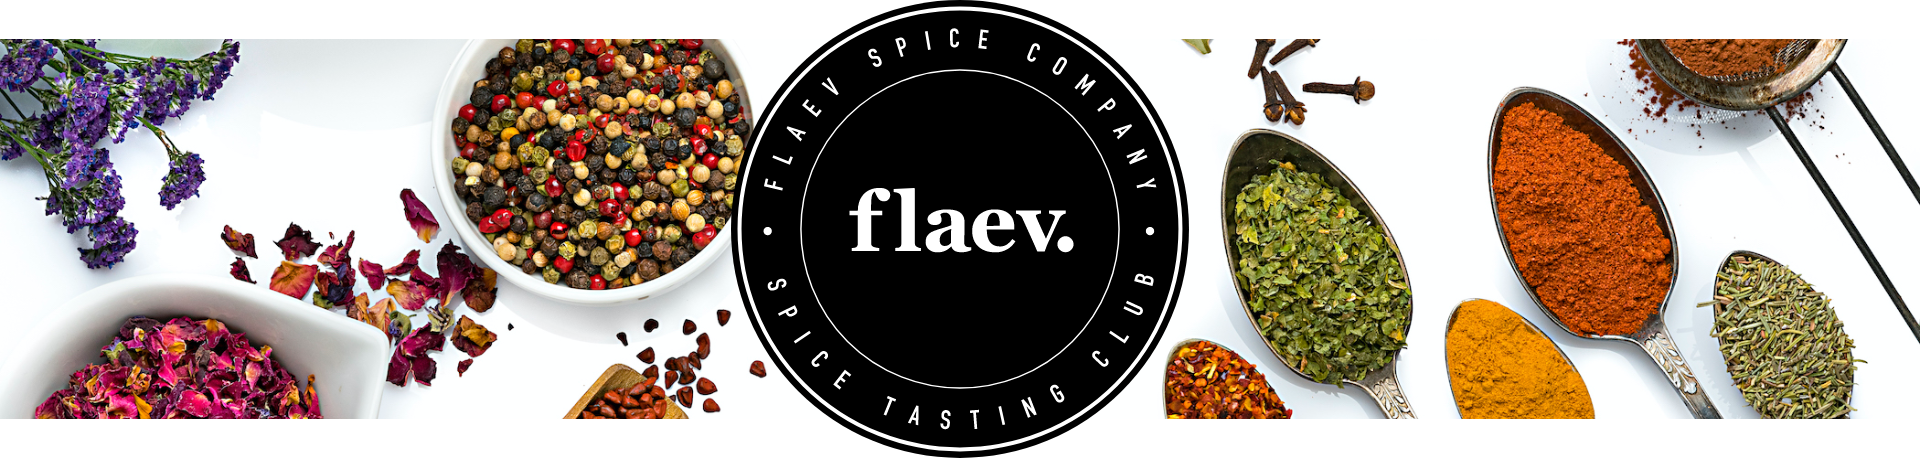 Flaev Spice Tasting Club Bannner